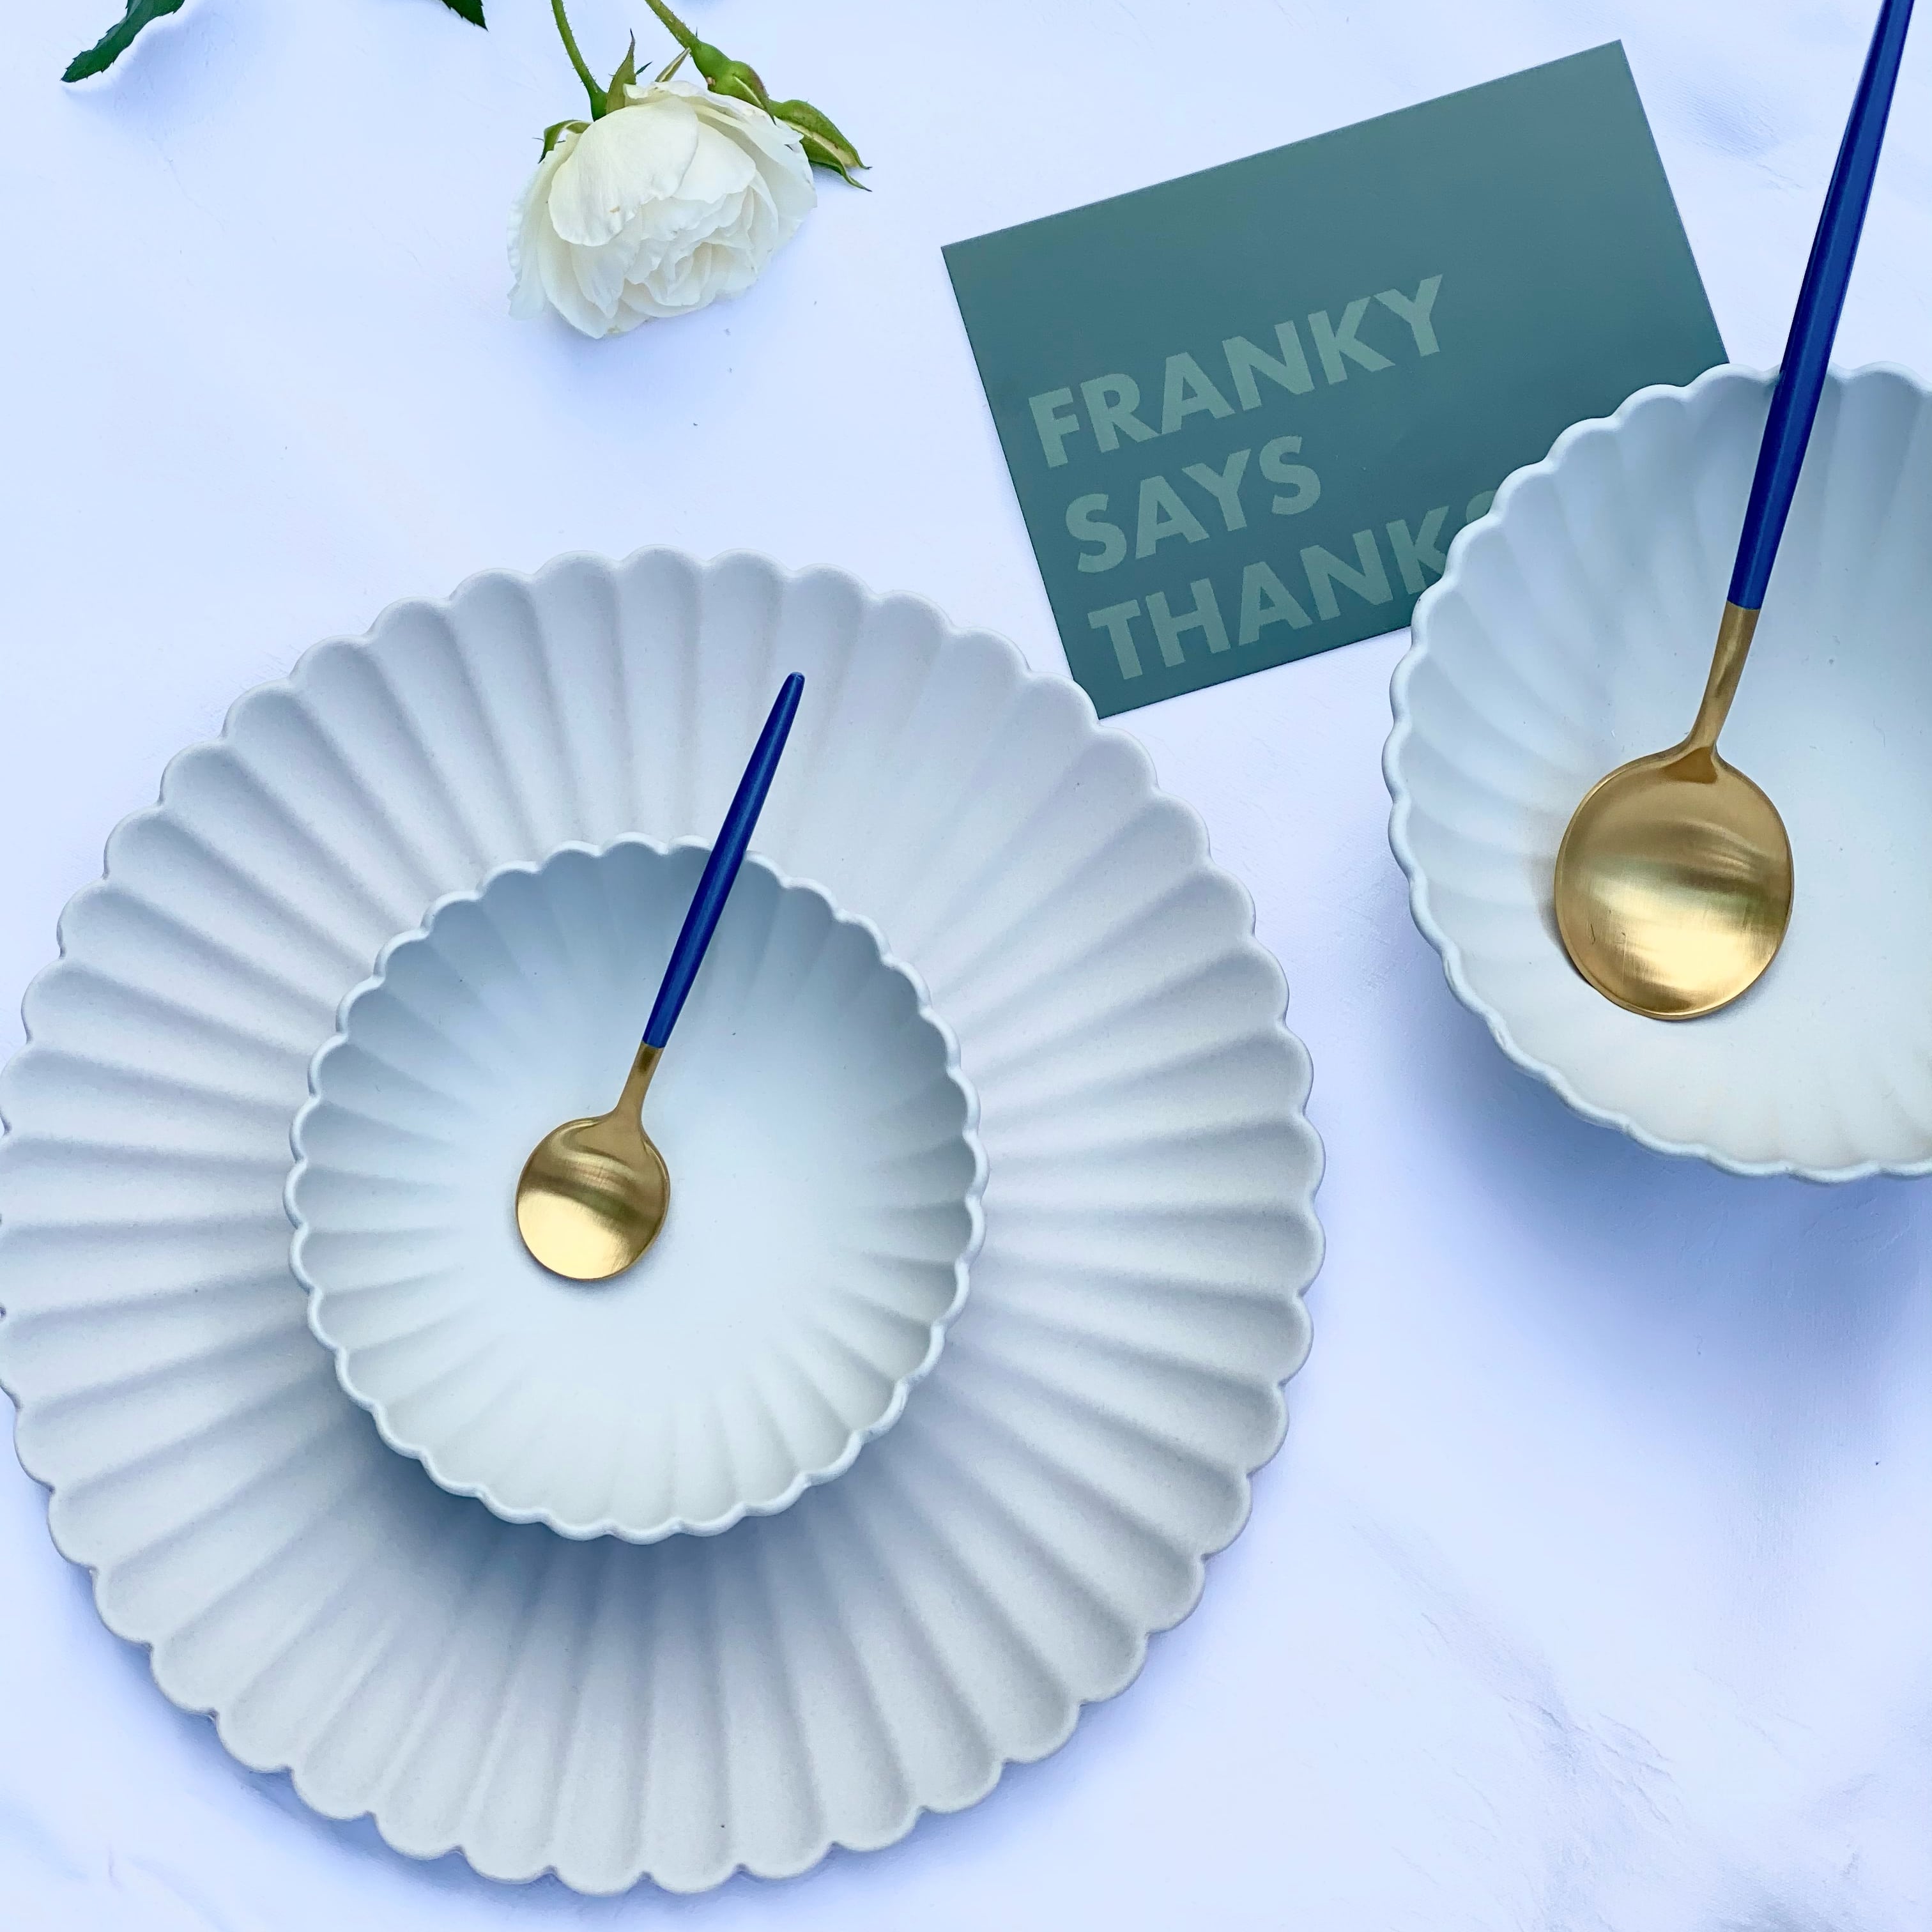 Denmark Dinner Plate - Buy Plates Online at FRANKY'S